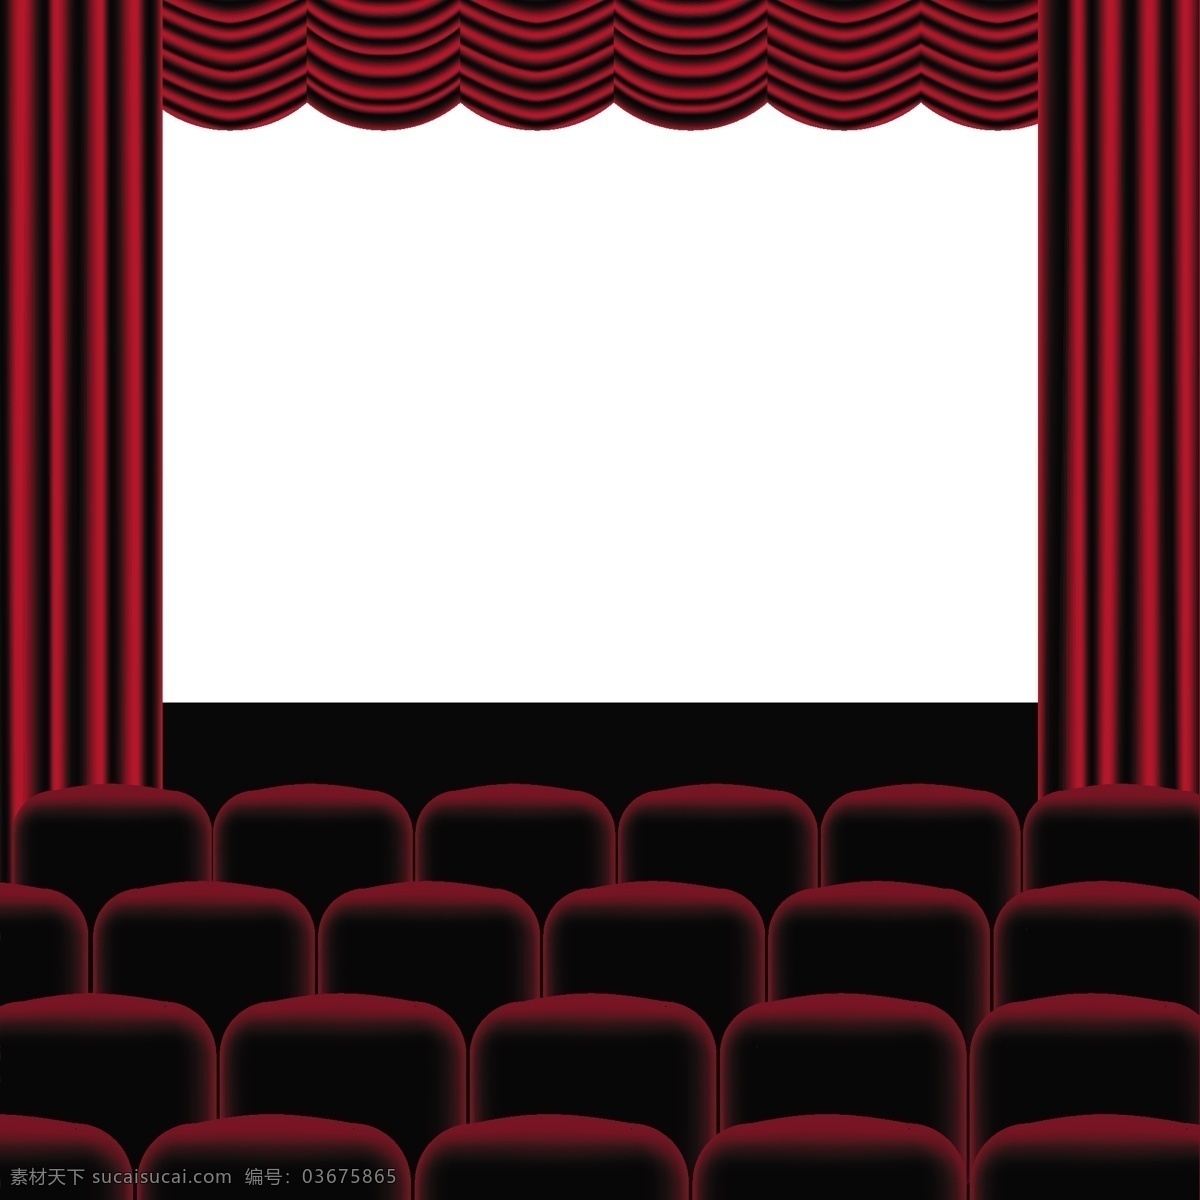 电影院 内部 结构图 模板下载 大屏幕 电影 座位 华丽 小资 影音娱乐 生活百科 矢量素材 黑色